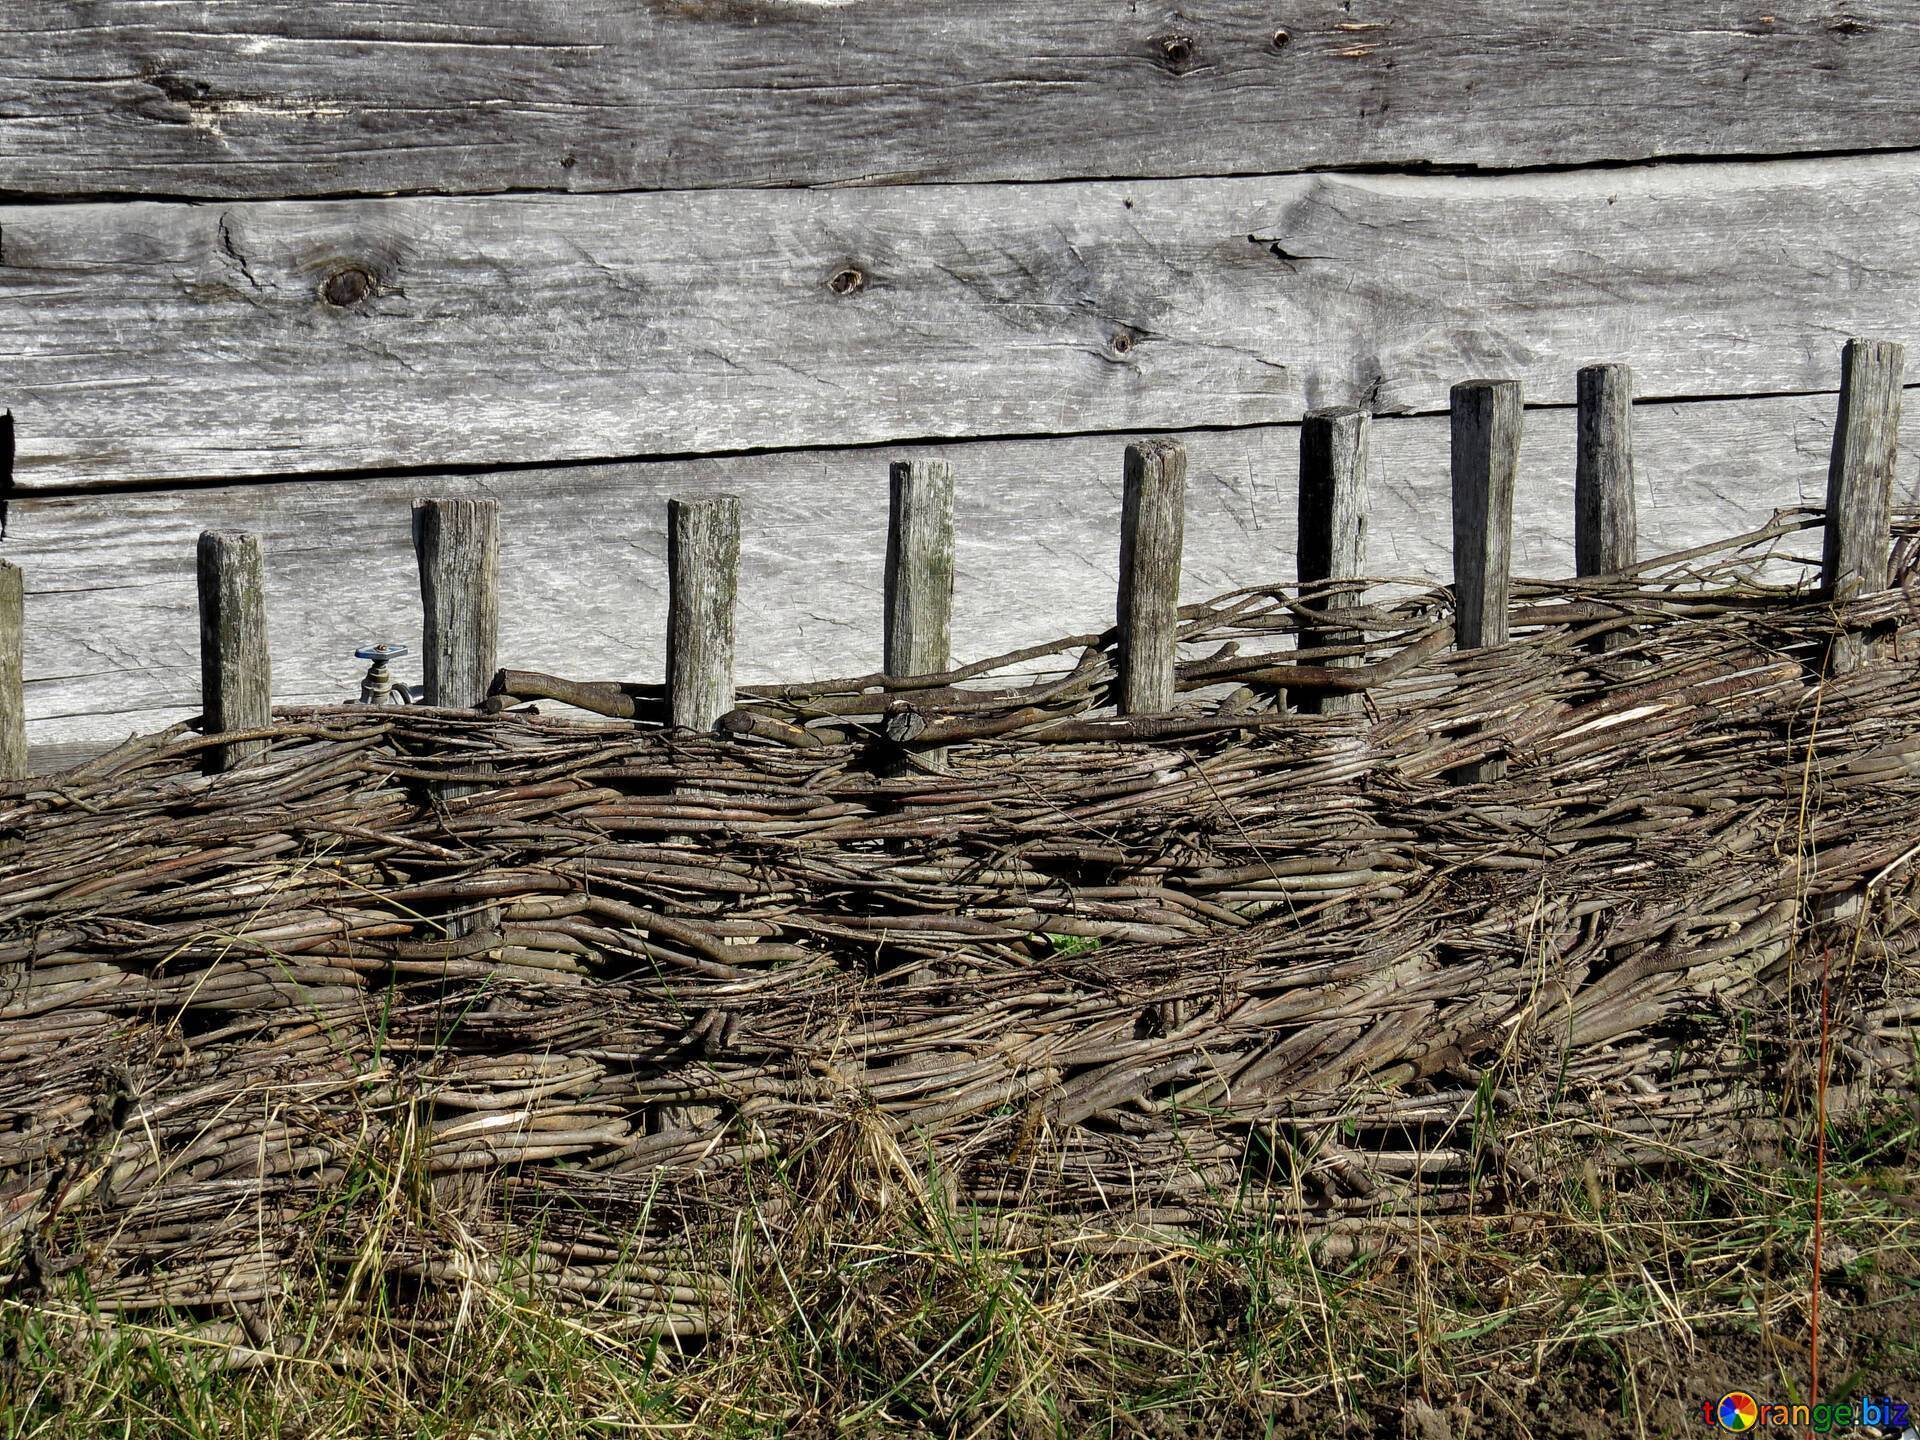 Забор из лозы своими руками - узнайте особенности плетенного забора